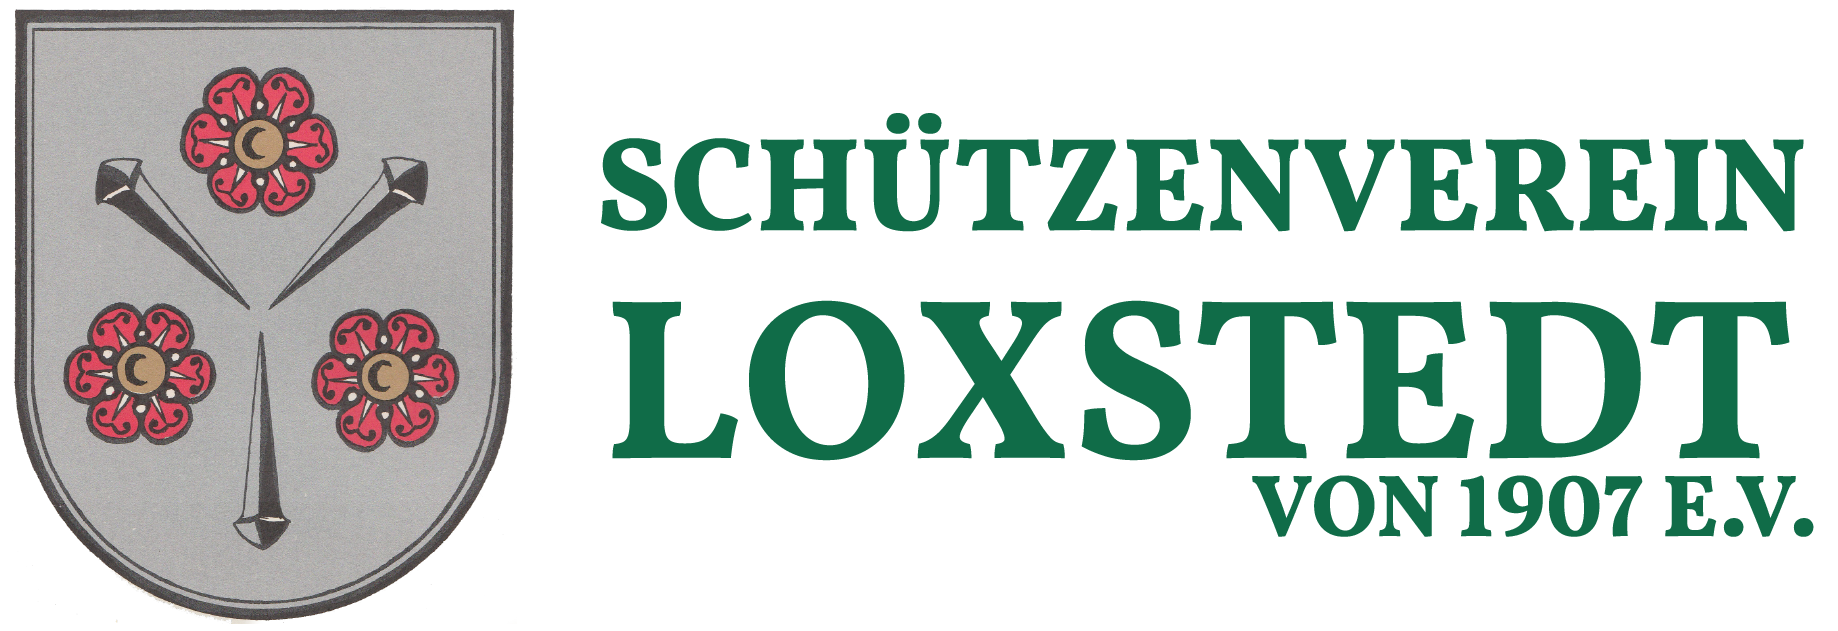 Schützenverein Loxstedt von 1907 e.V.